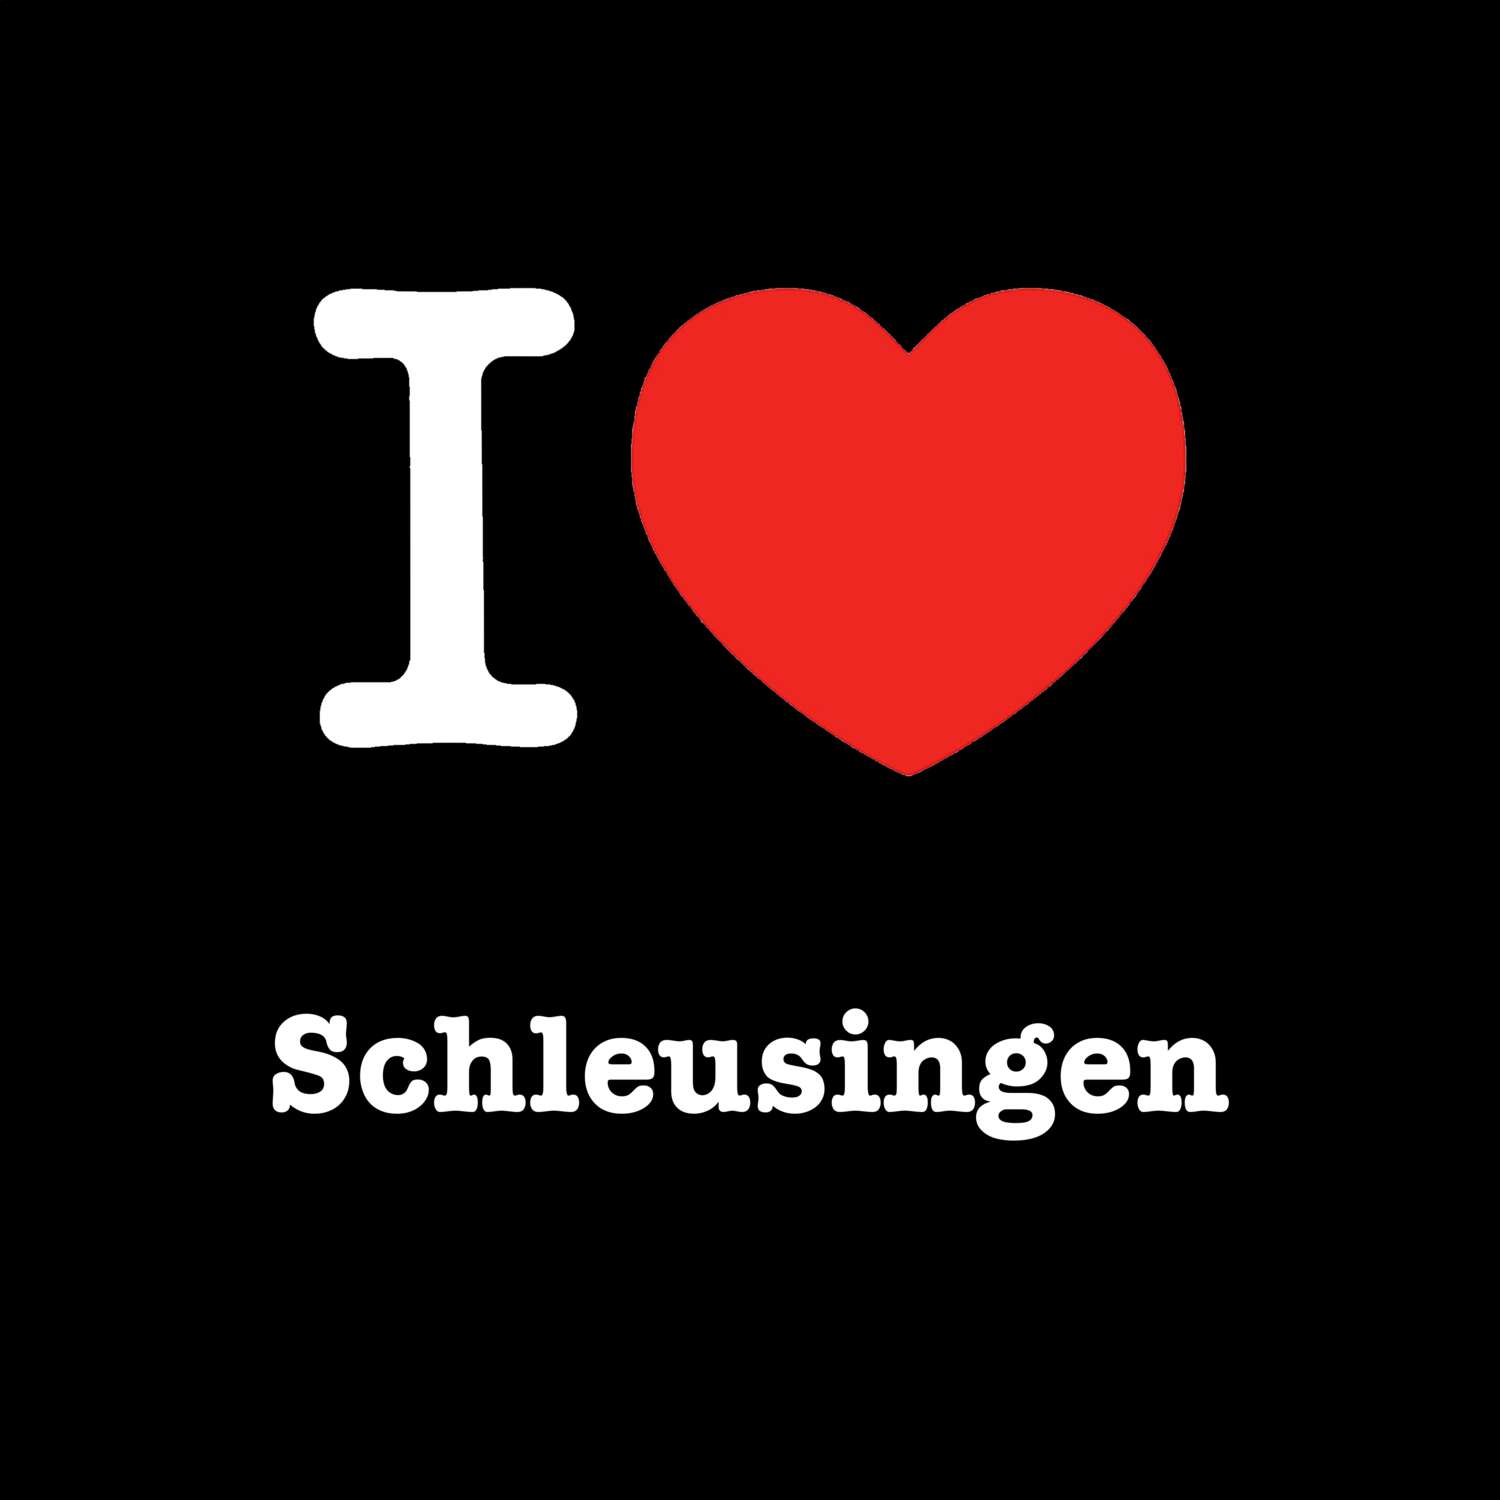 Schleusingen T-Shirt »I love«